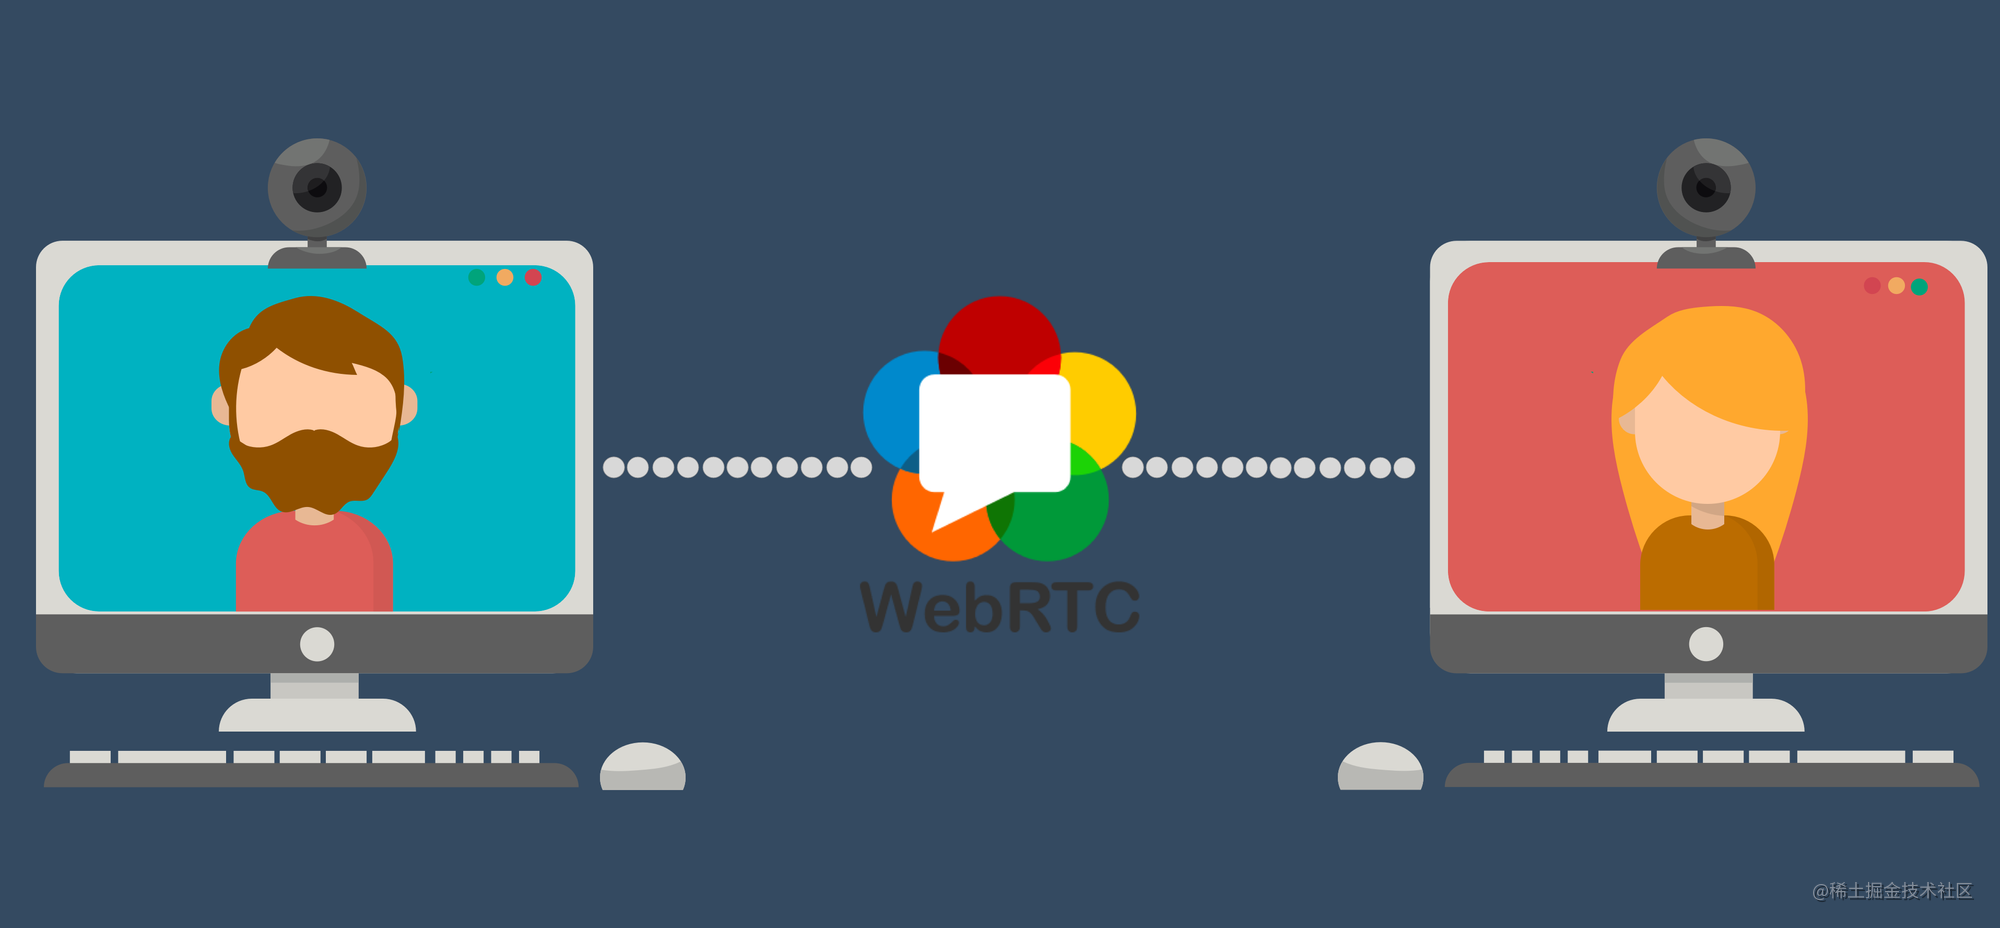 WebRTC从实战到未来